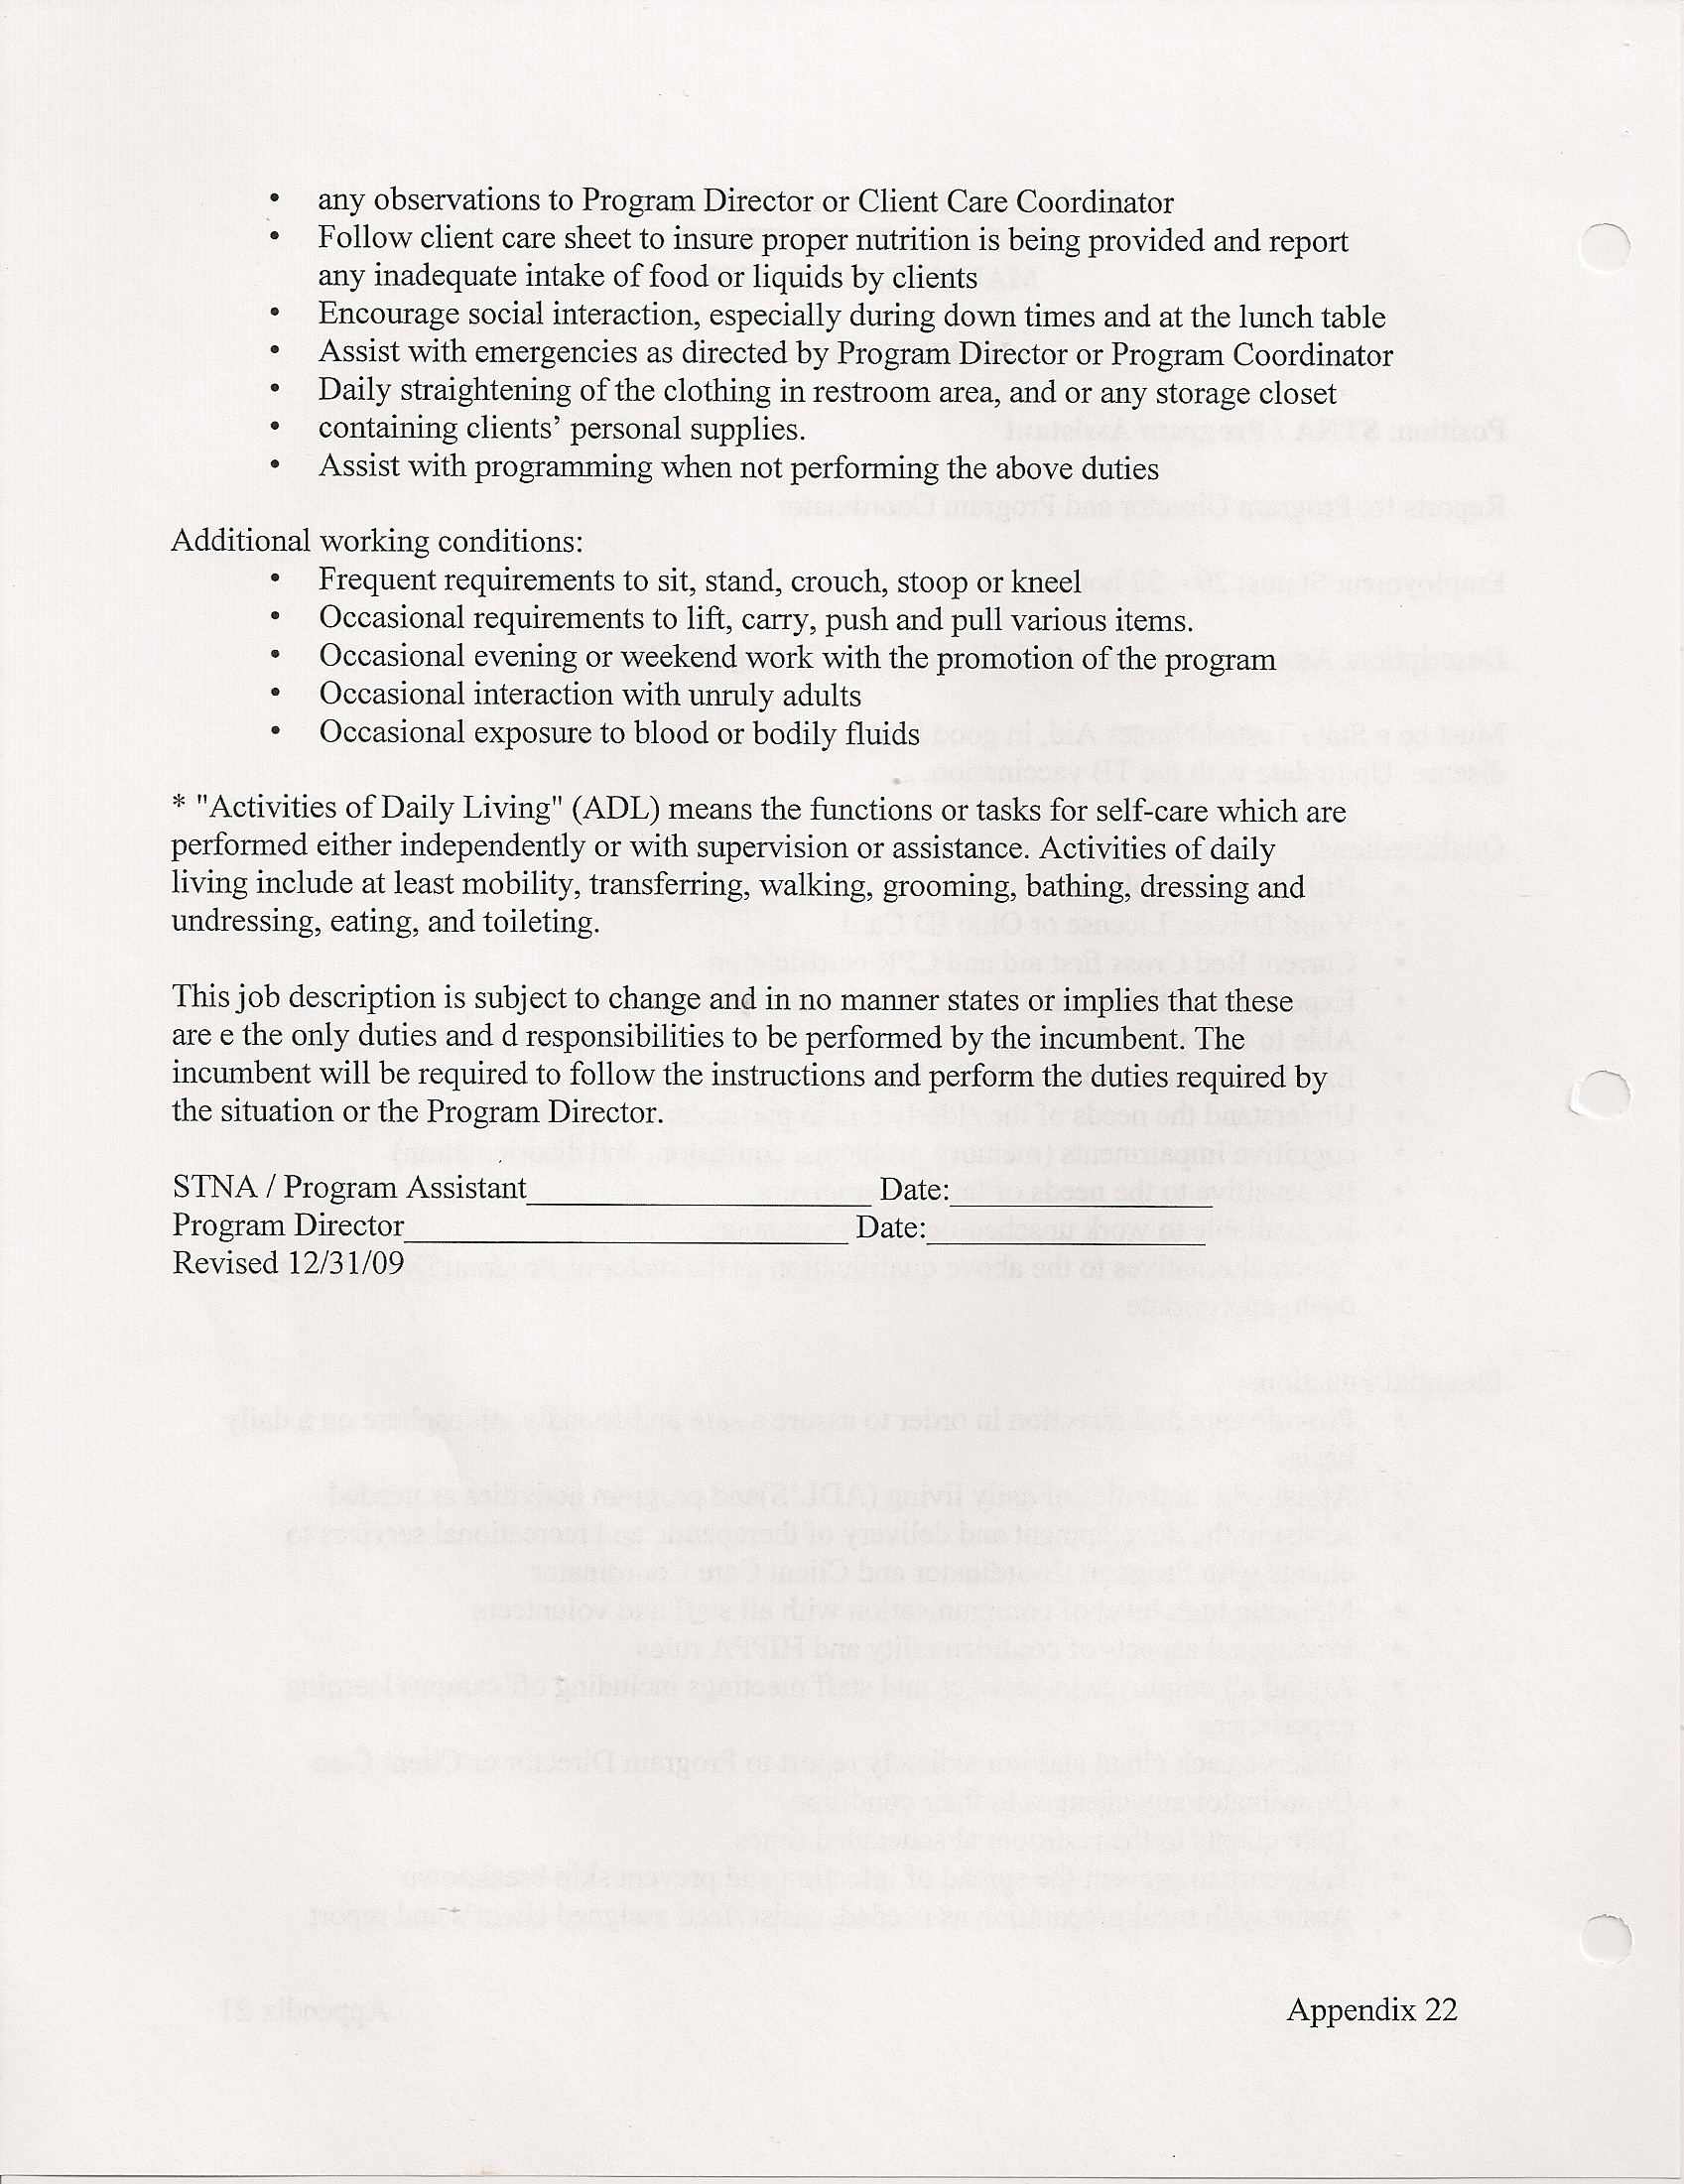 STNA/Program Assistant Job Description - page 2